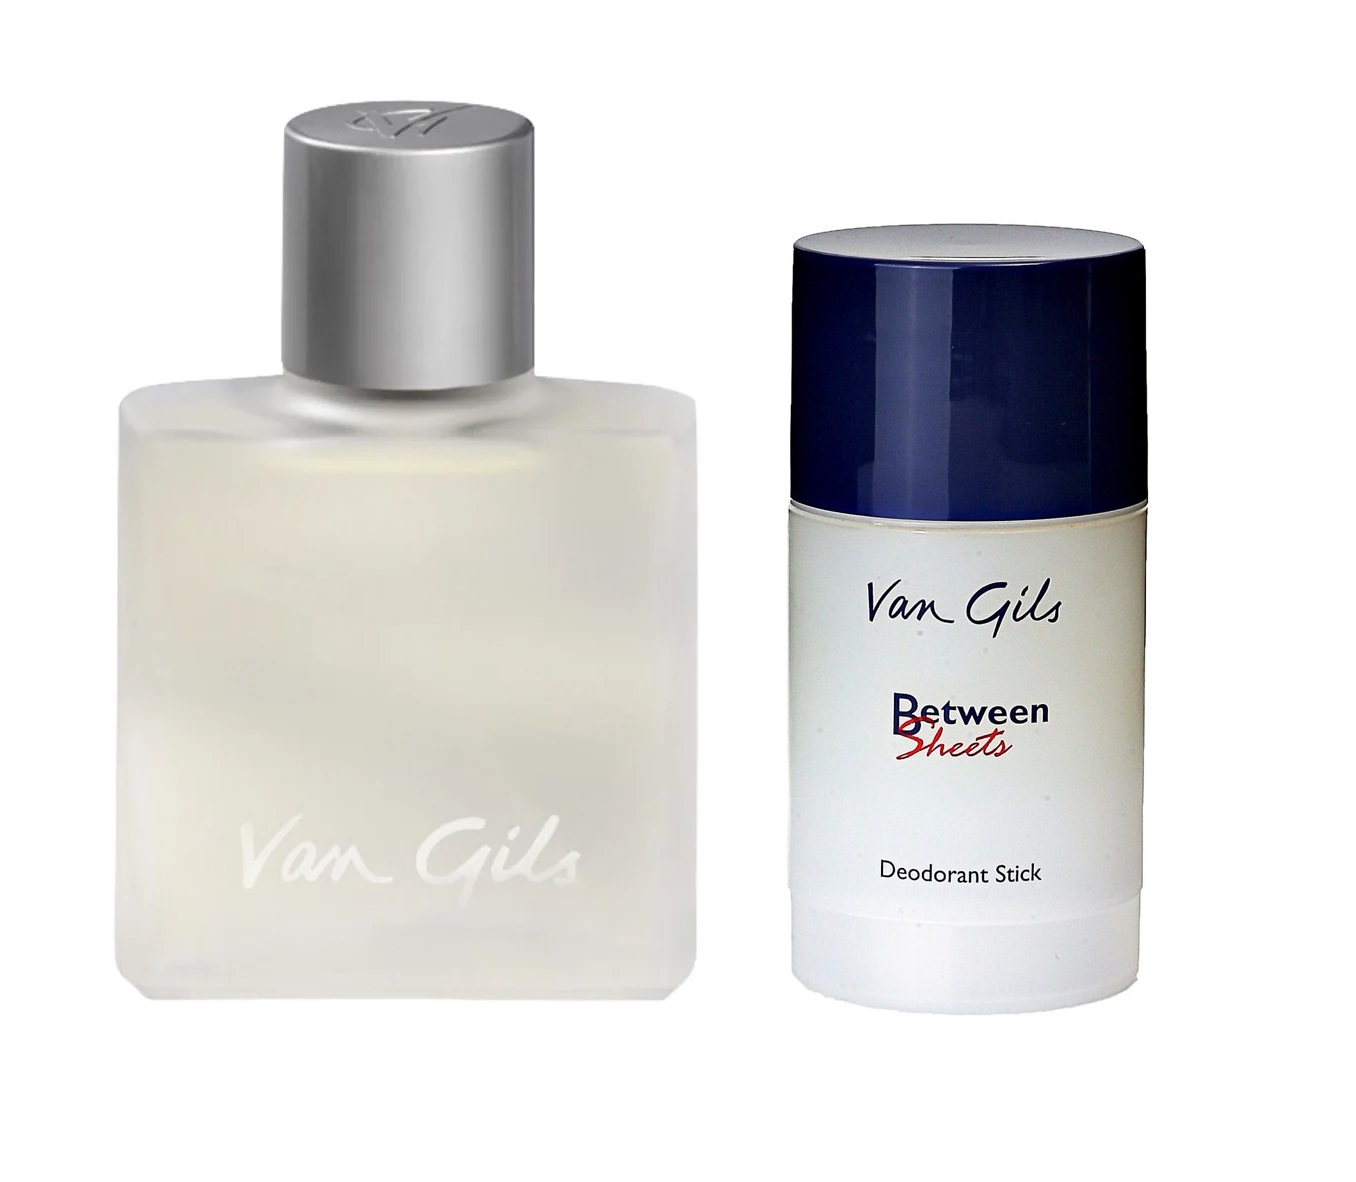 Van Gils - Between Sheets EDT 50 ml + Van Gils - Between Sheets Deodorant Stick 75 ml - Skjønnhet